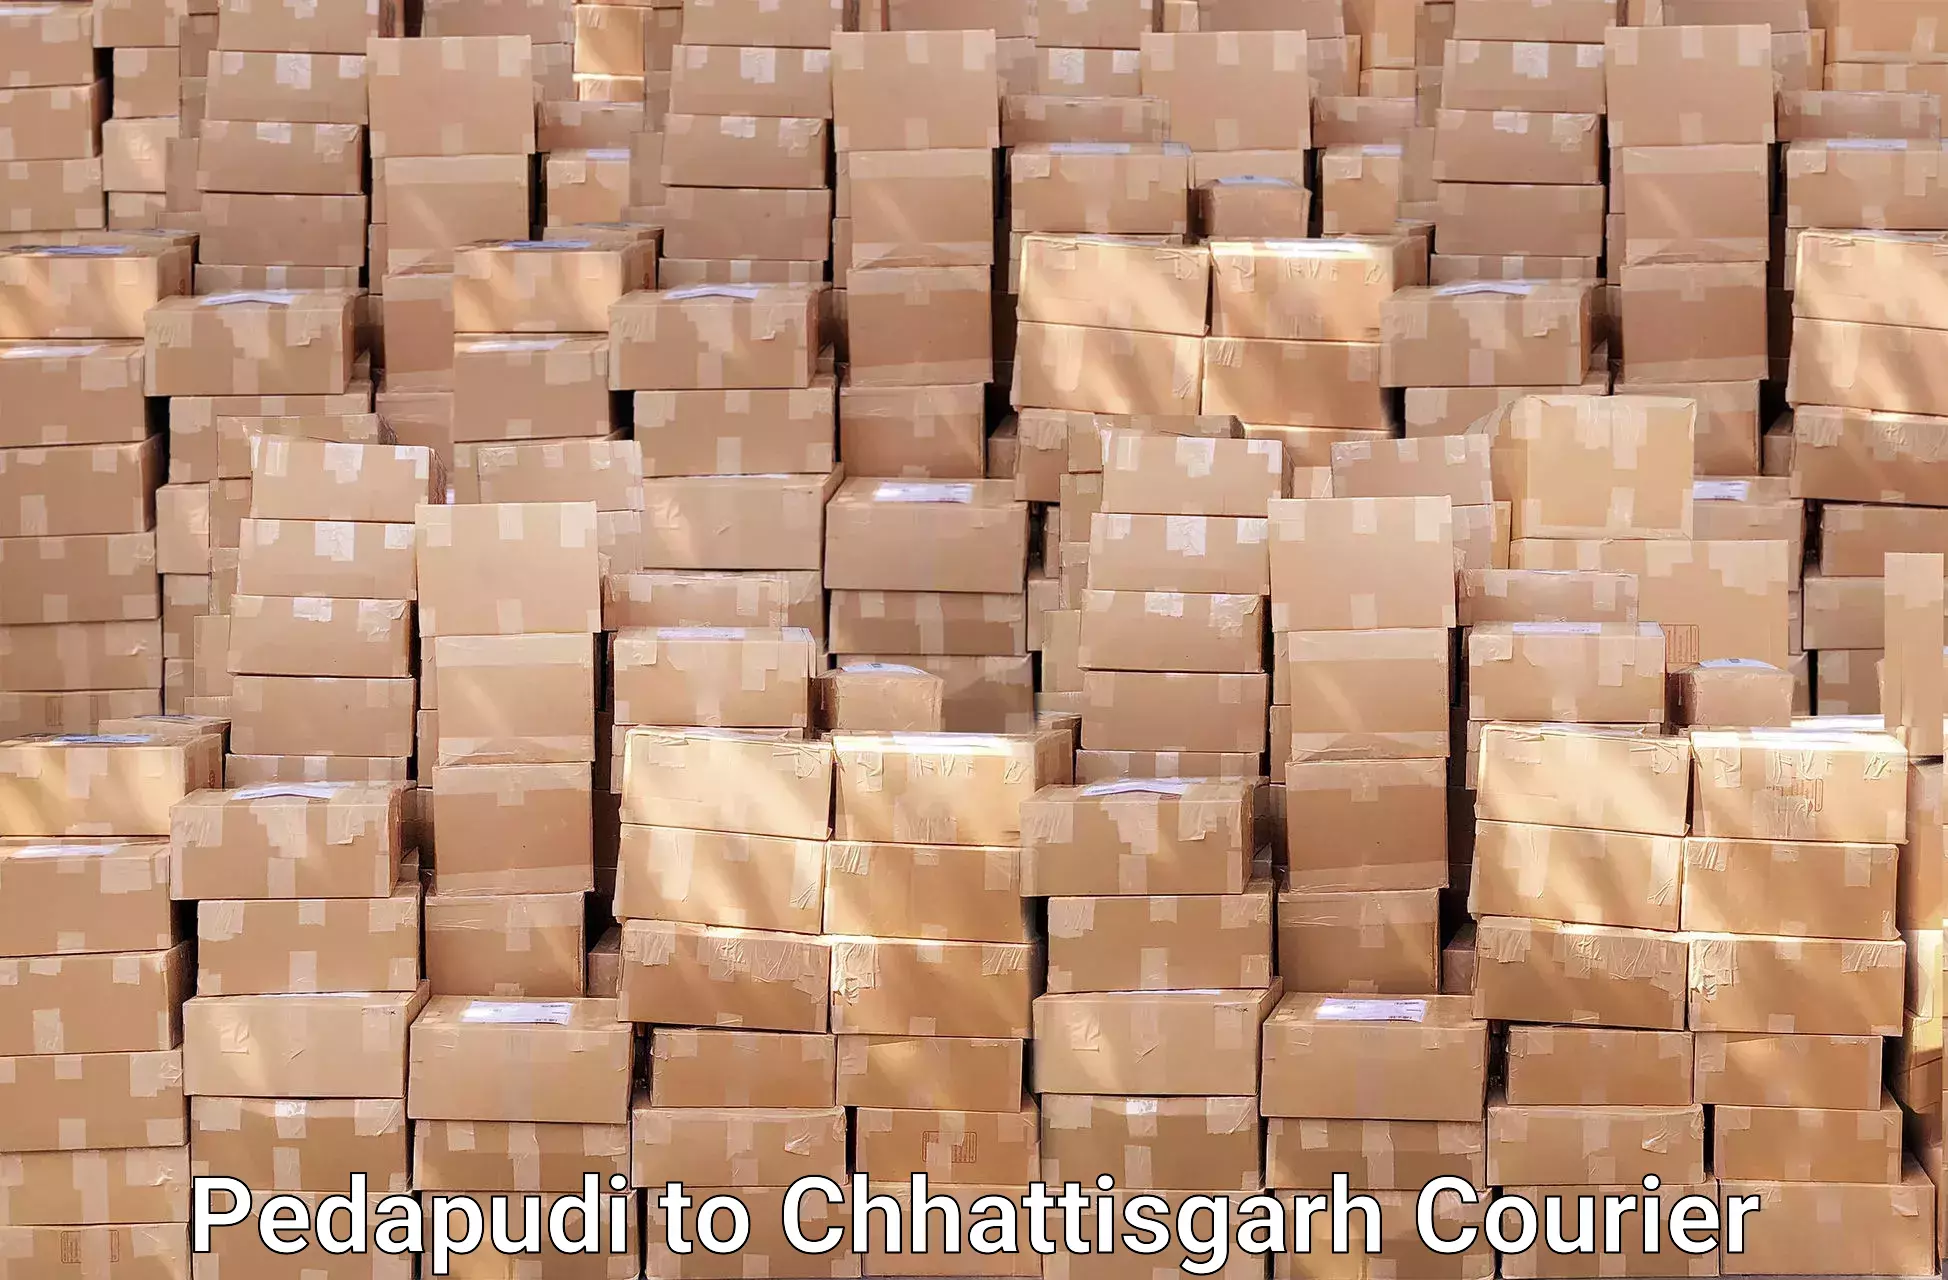 Specialized moving company Pedapudi to Korea Chhattisgarh